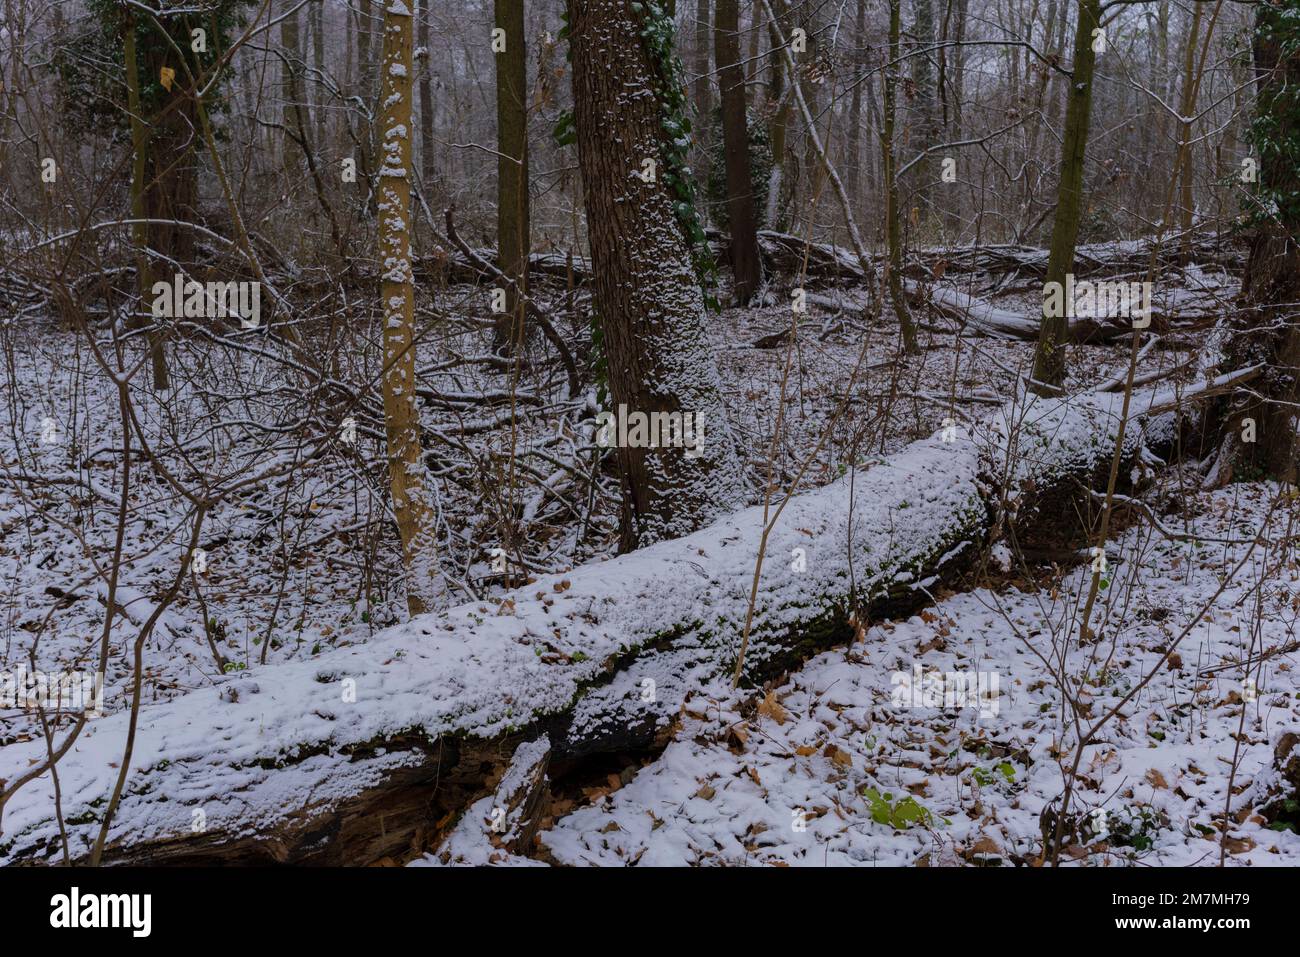 Le début de l'hiver, première neige dans une forêt à feuilles caduques, arbre mort couvert de neige Banque D'Images